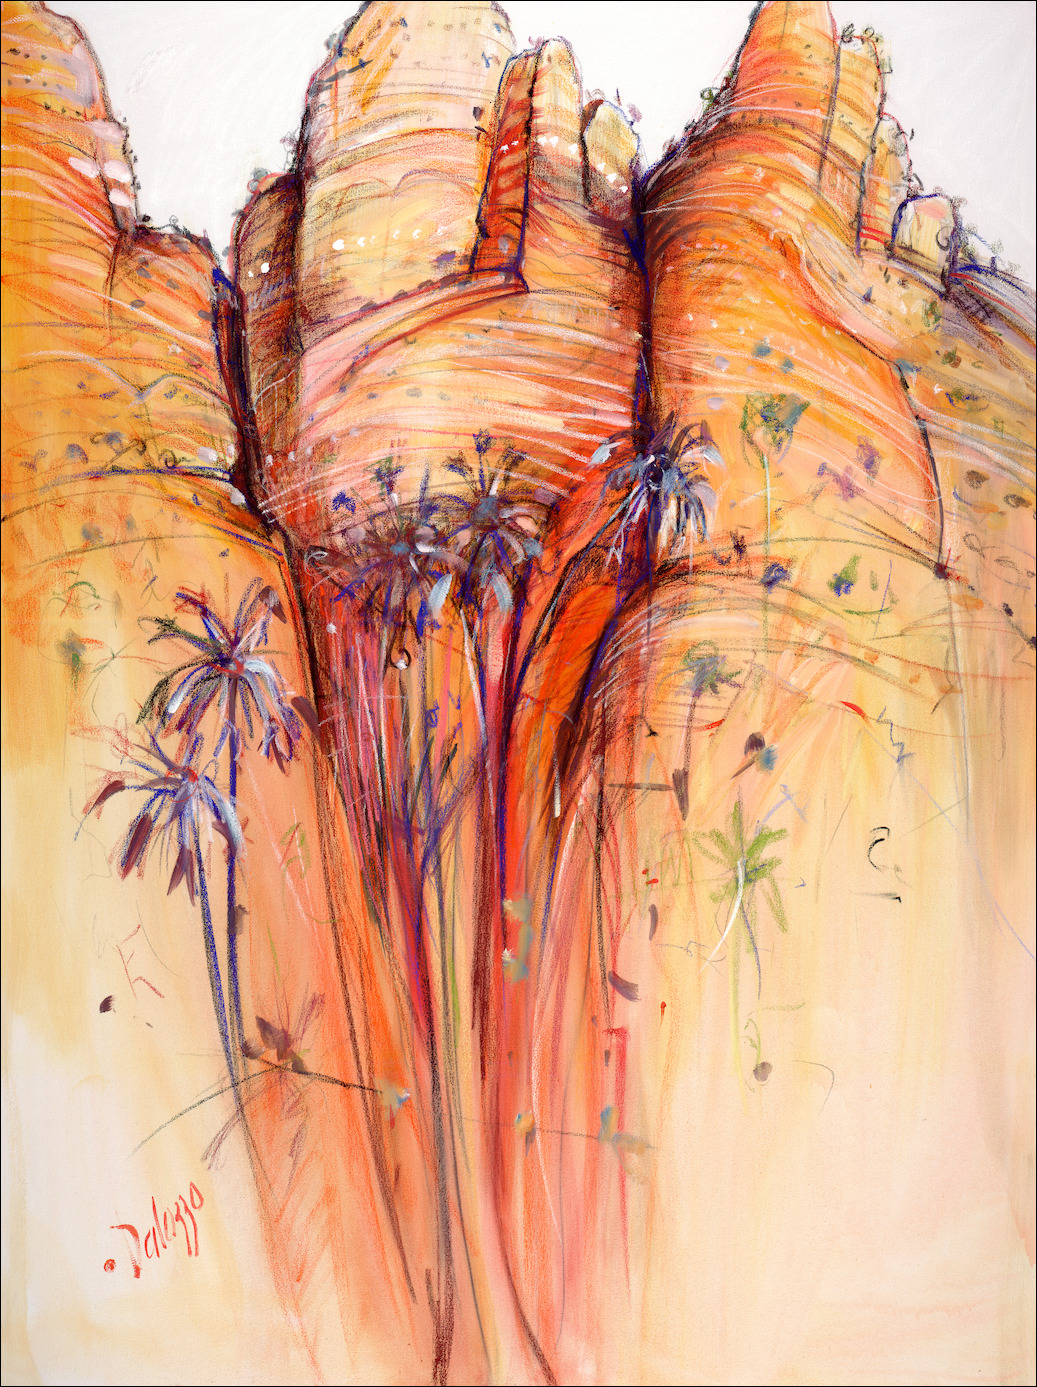 Landscape "Bungle Bungles" Triptych Middle Panel Original Artwork by Lucette Dalozzo